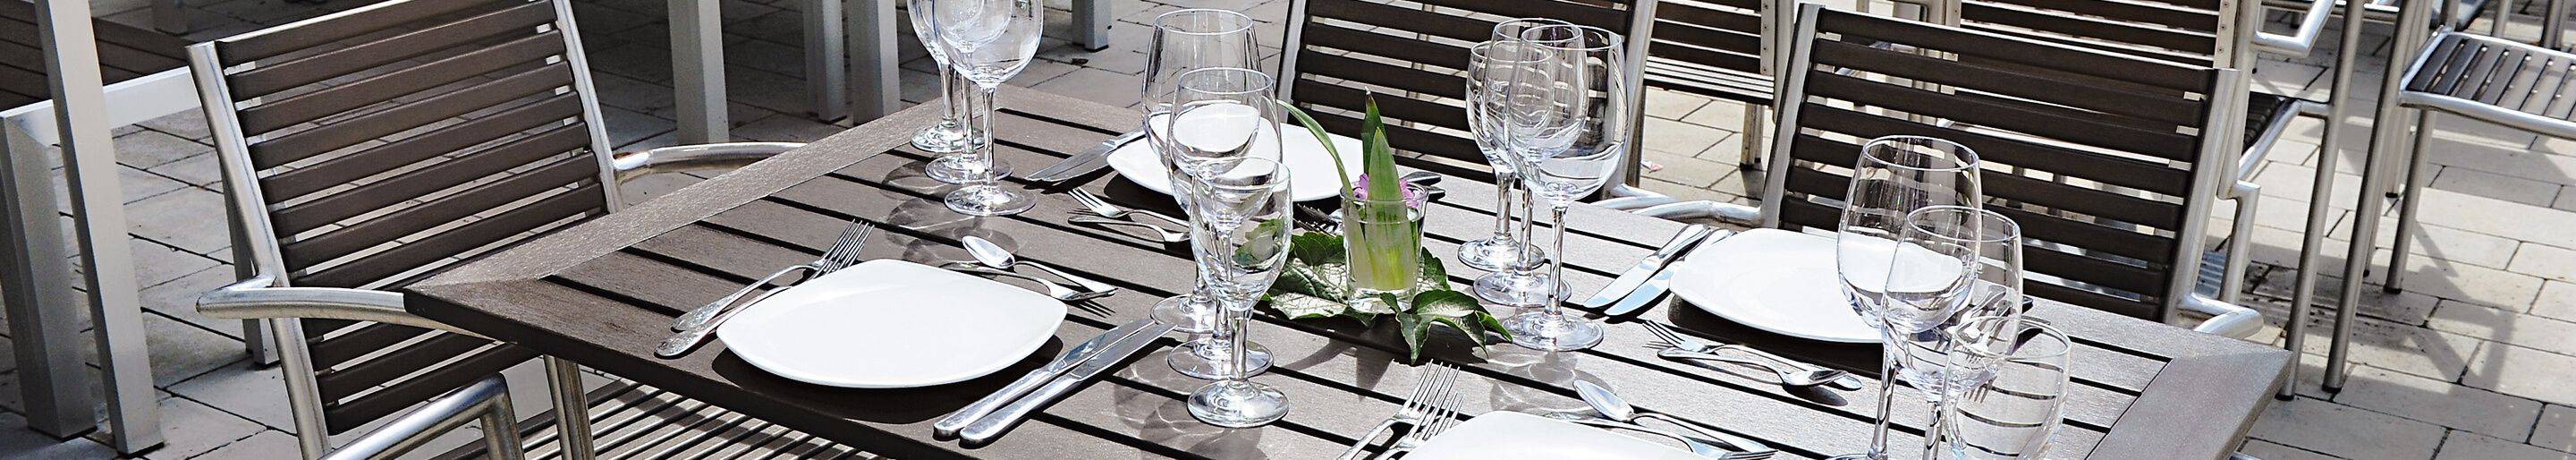 Wetterfeste Tischplatten für Ihre Gastronomie, Hotellerie oder Biergarten